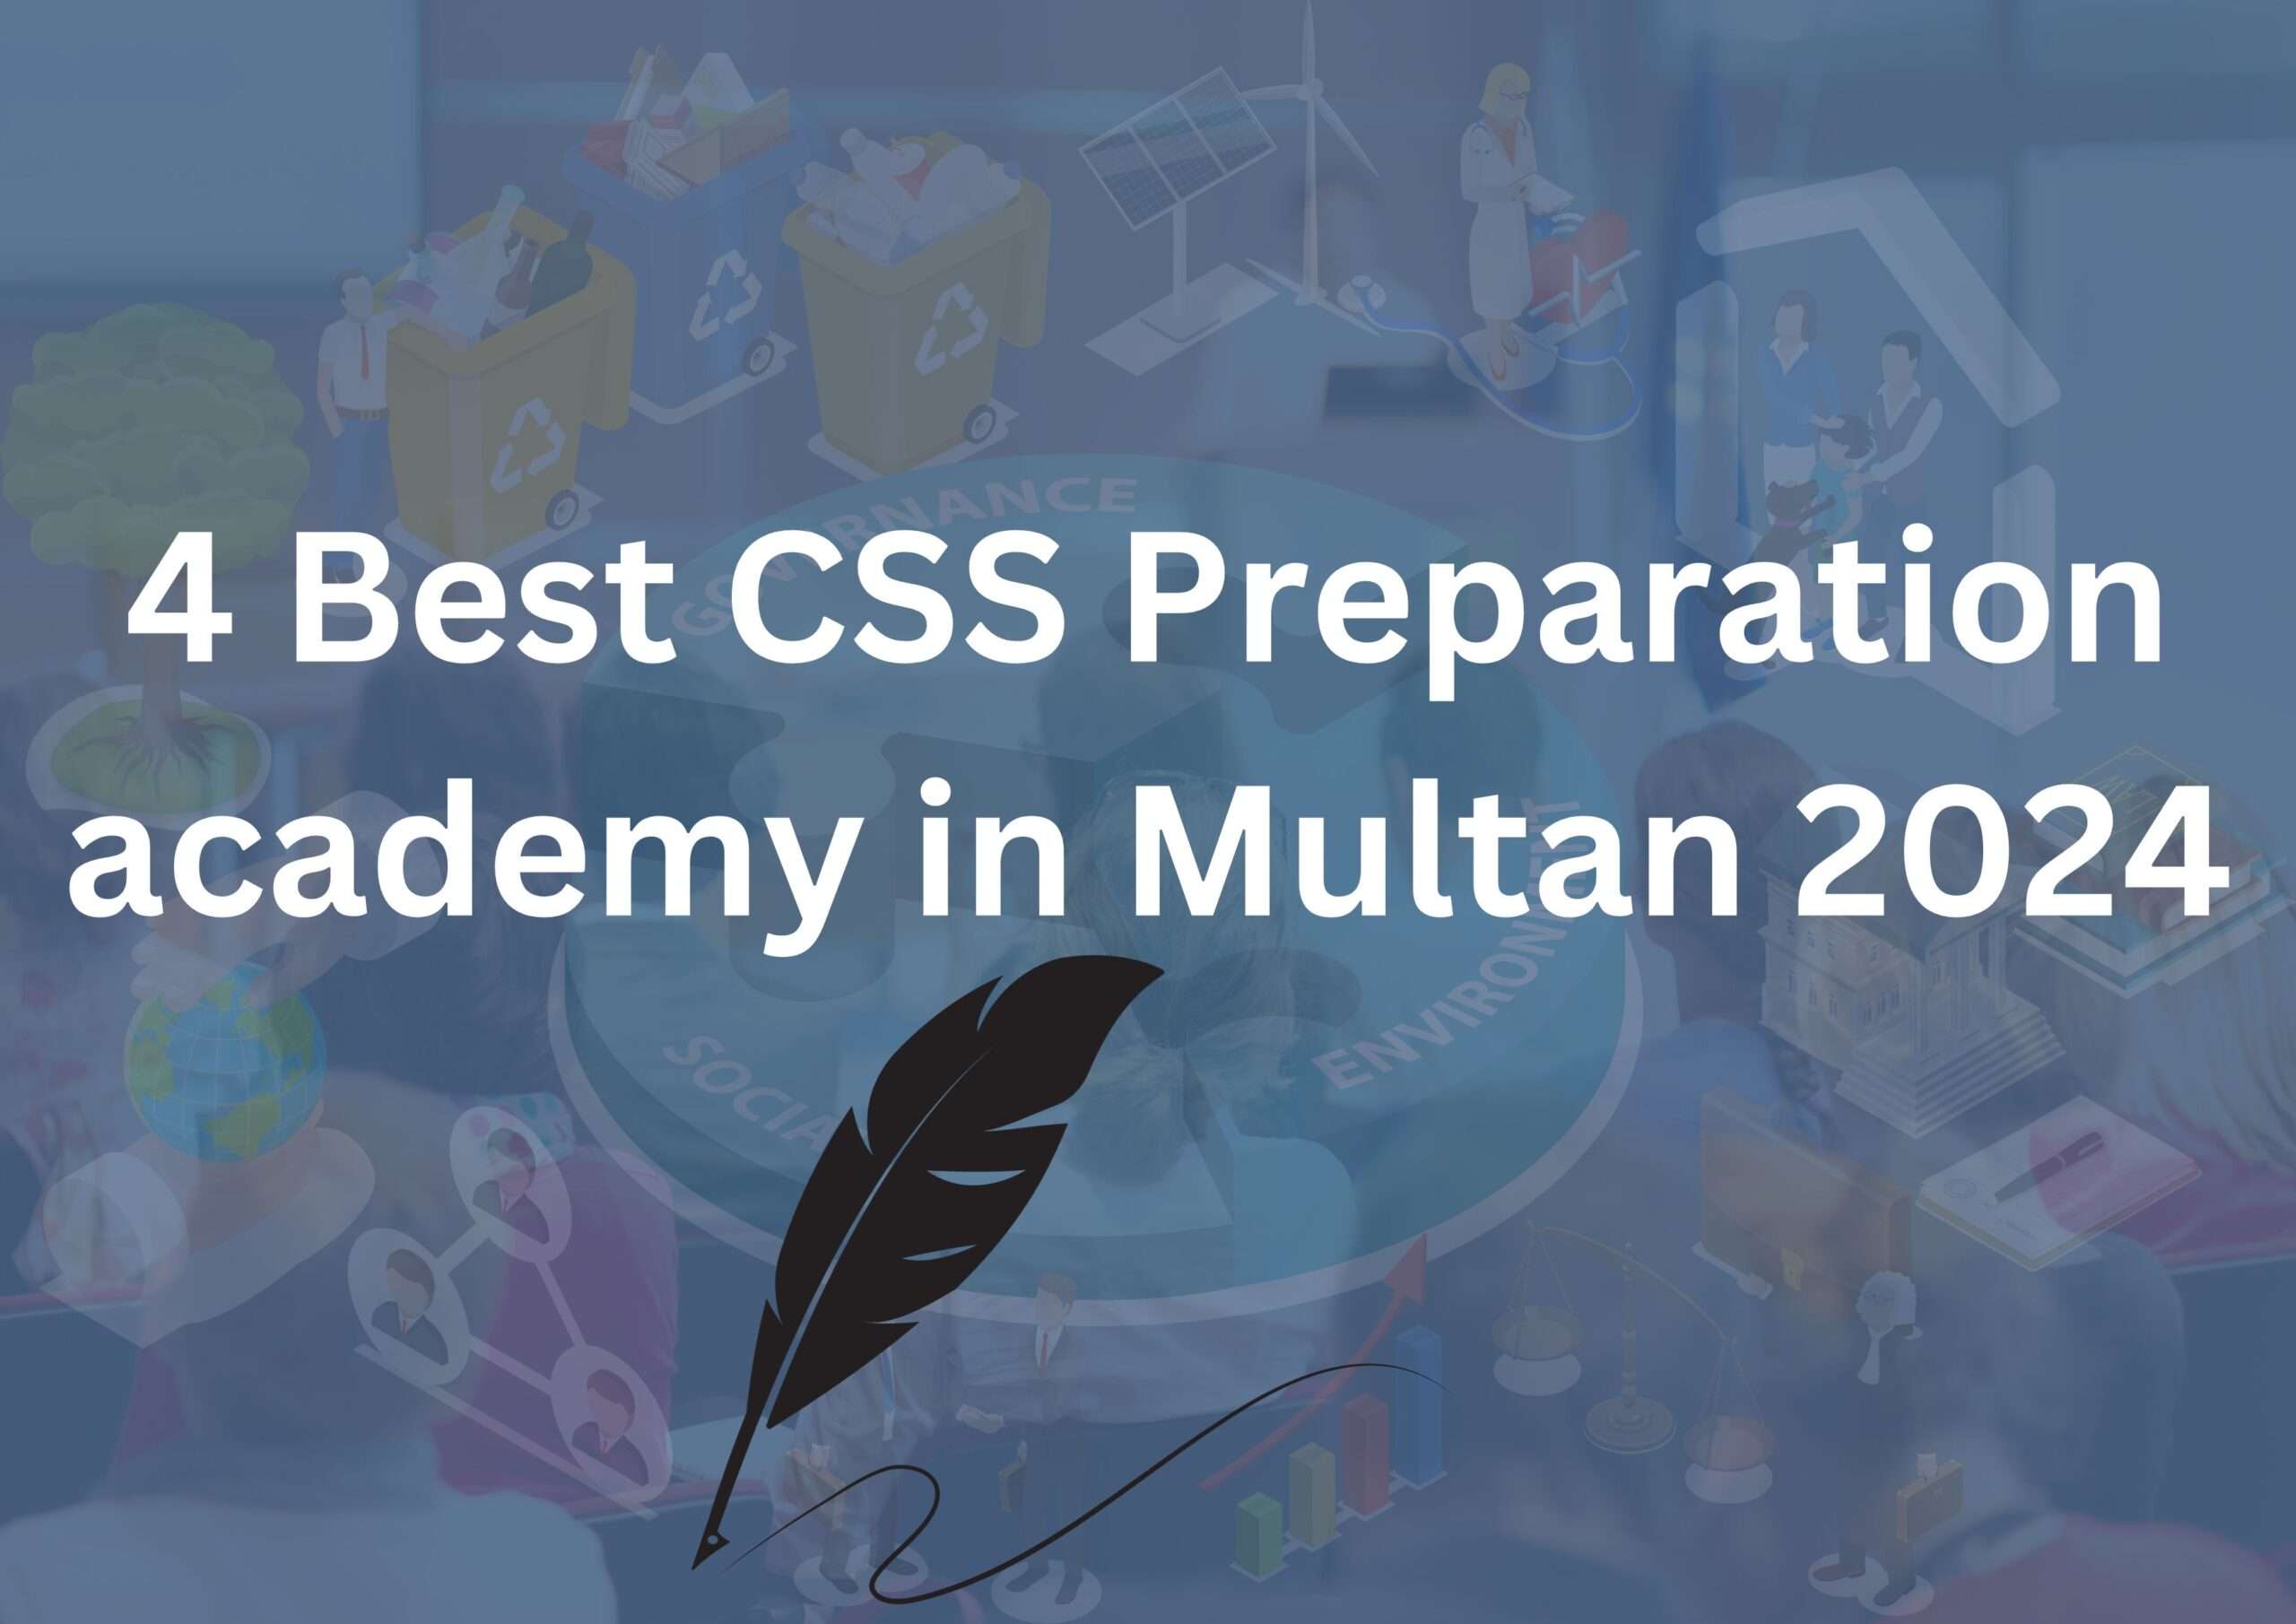 CSS Preparation academy in Multan